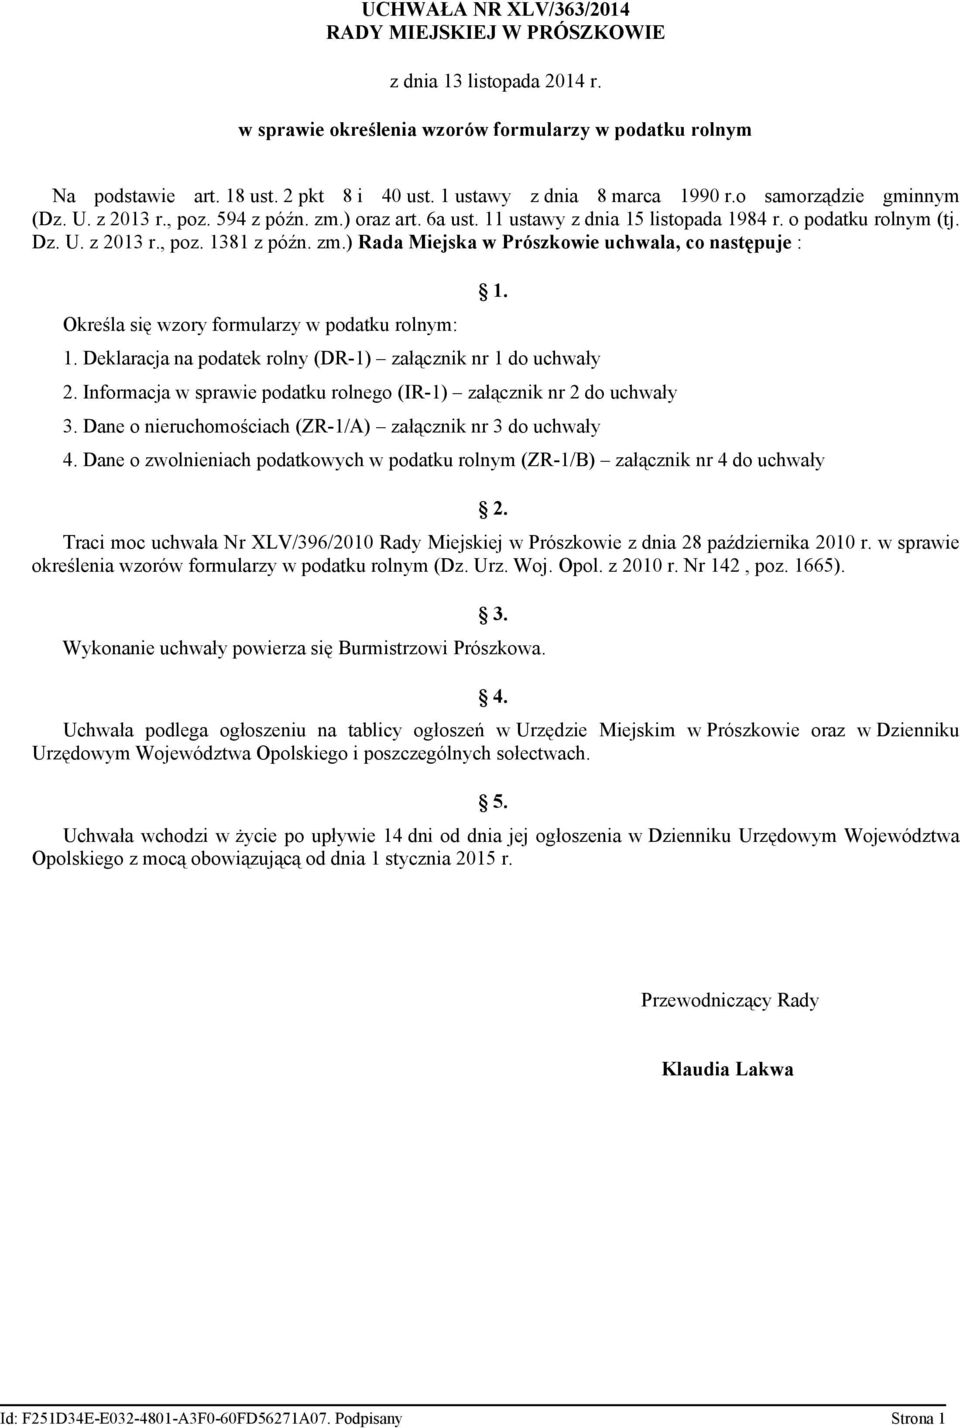 zm.) Rada Miejska w Prószkowie uchwala co następuje : Określa się wzory formularzy w podatku rolnym: 1. 1. Deklaracja na podatek rolny (DR-1) załącznik nr 1 do uchwały 2.